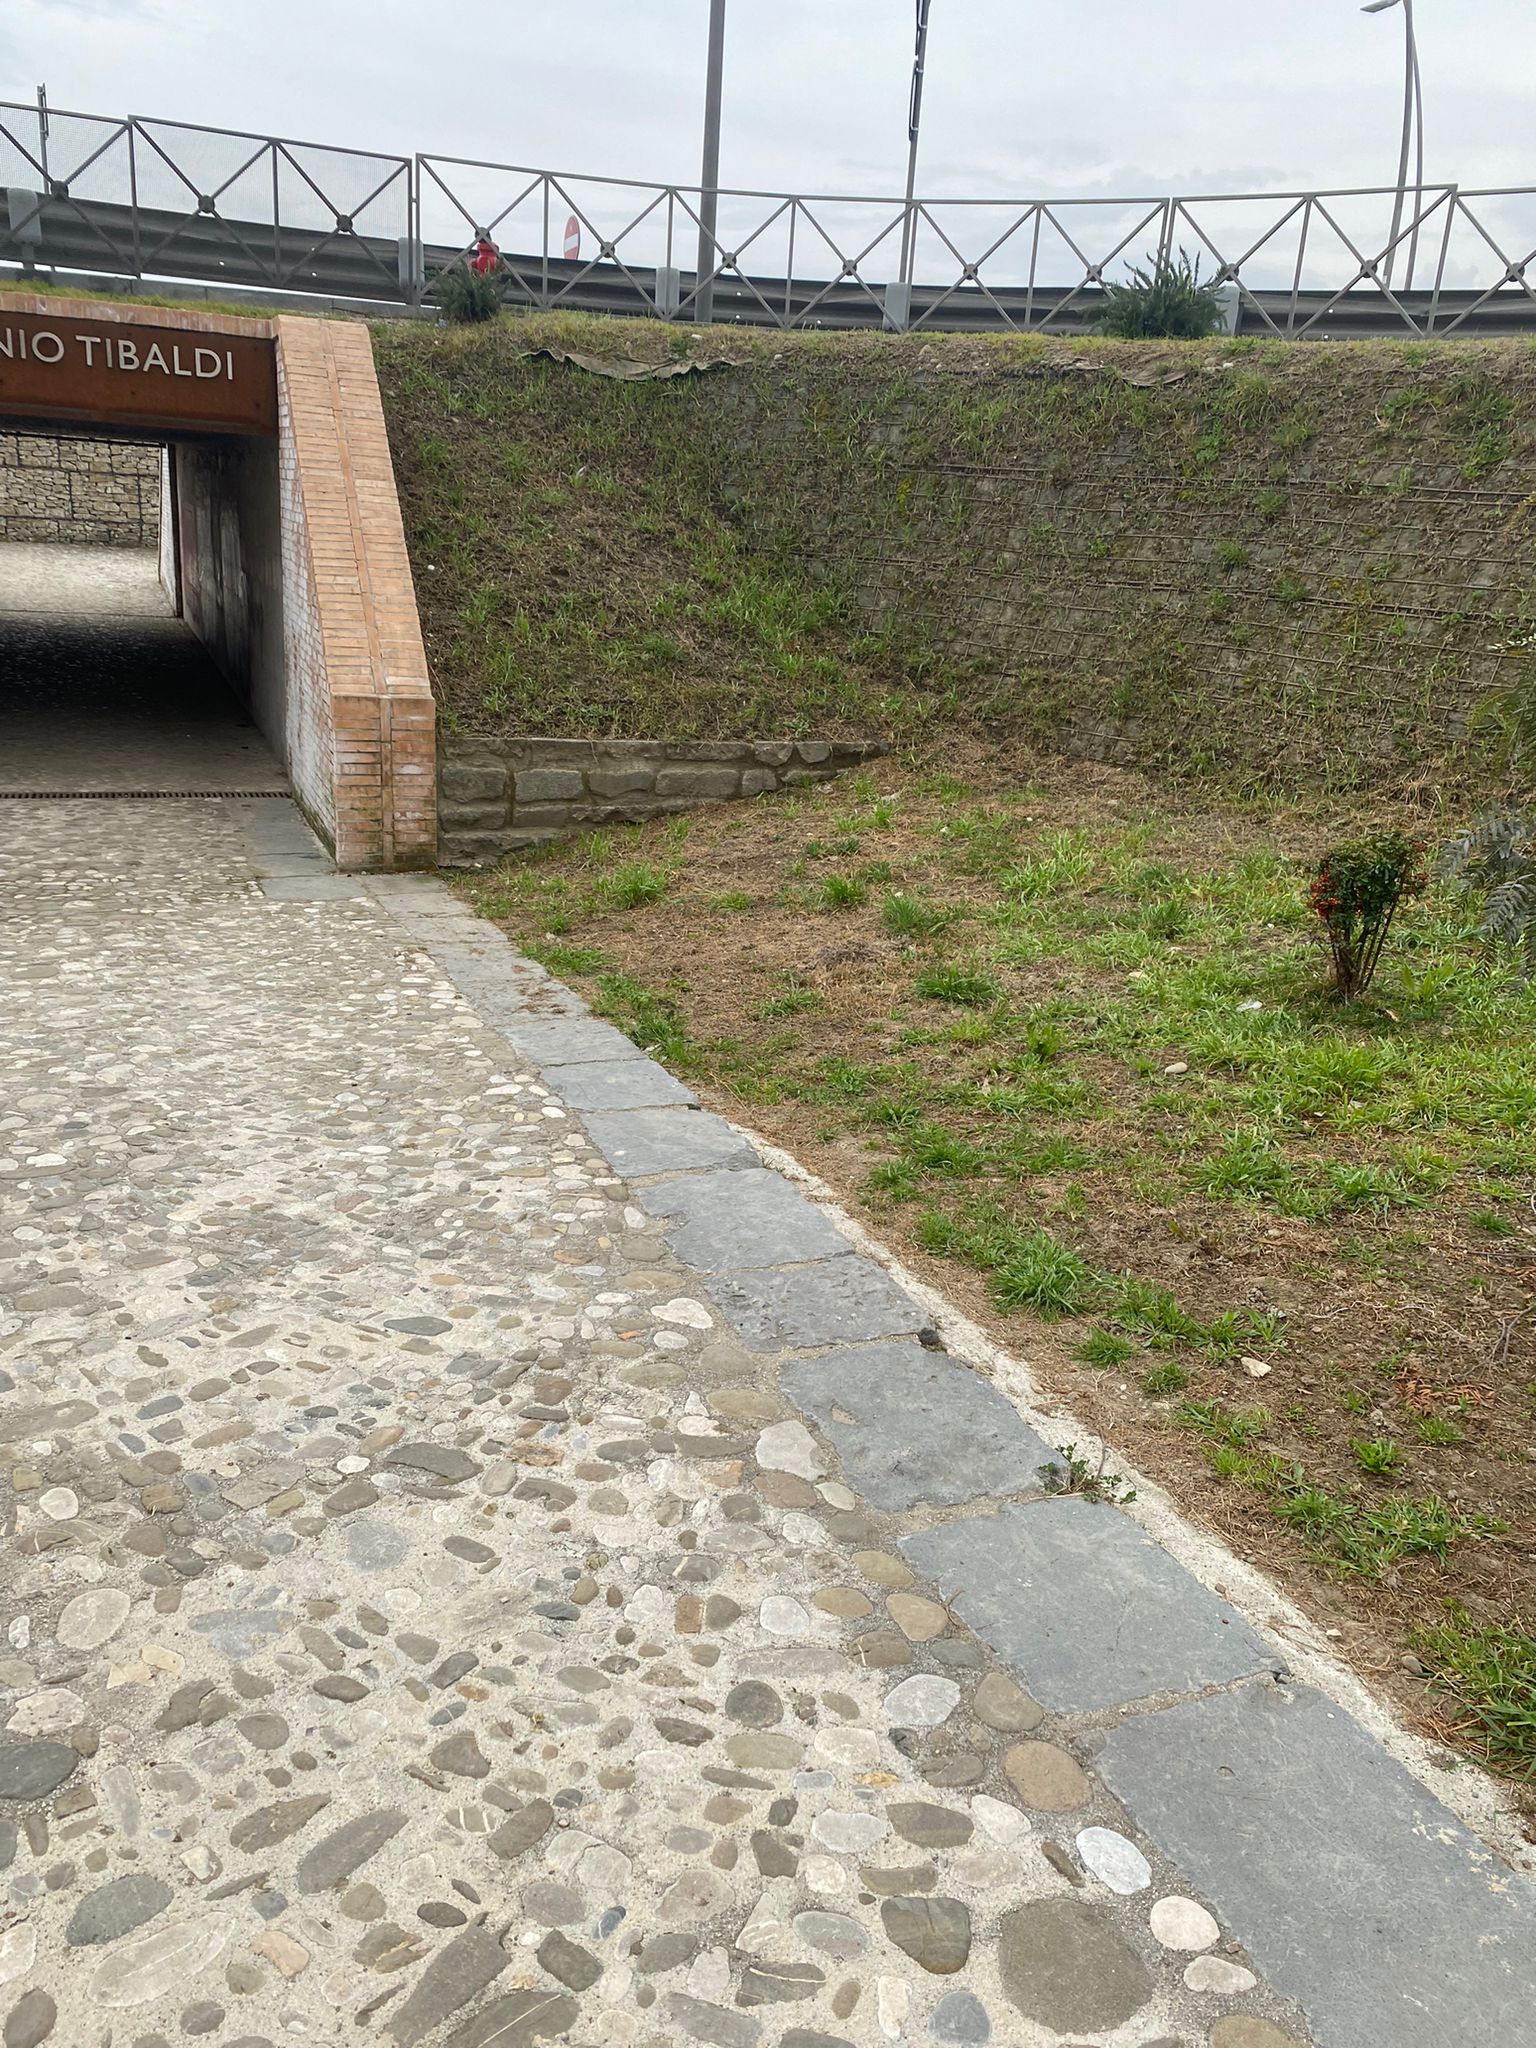 Ponte Tibaldi, Rosa: rimossi i rifiuti, appello alle coscienze per una città più pulita